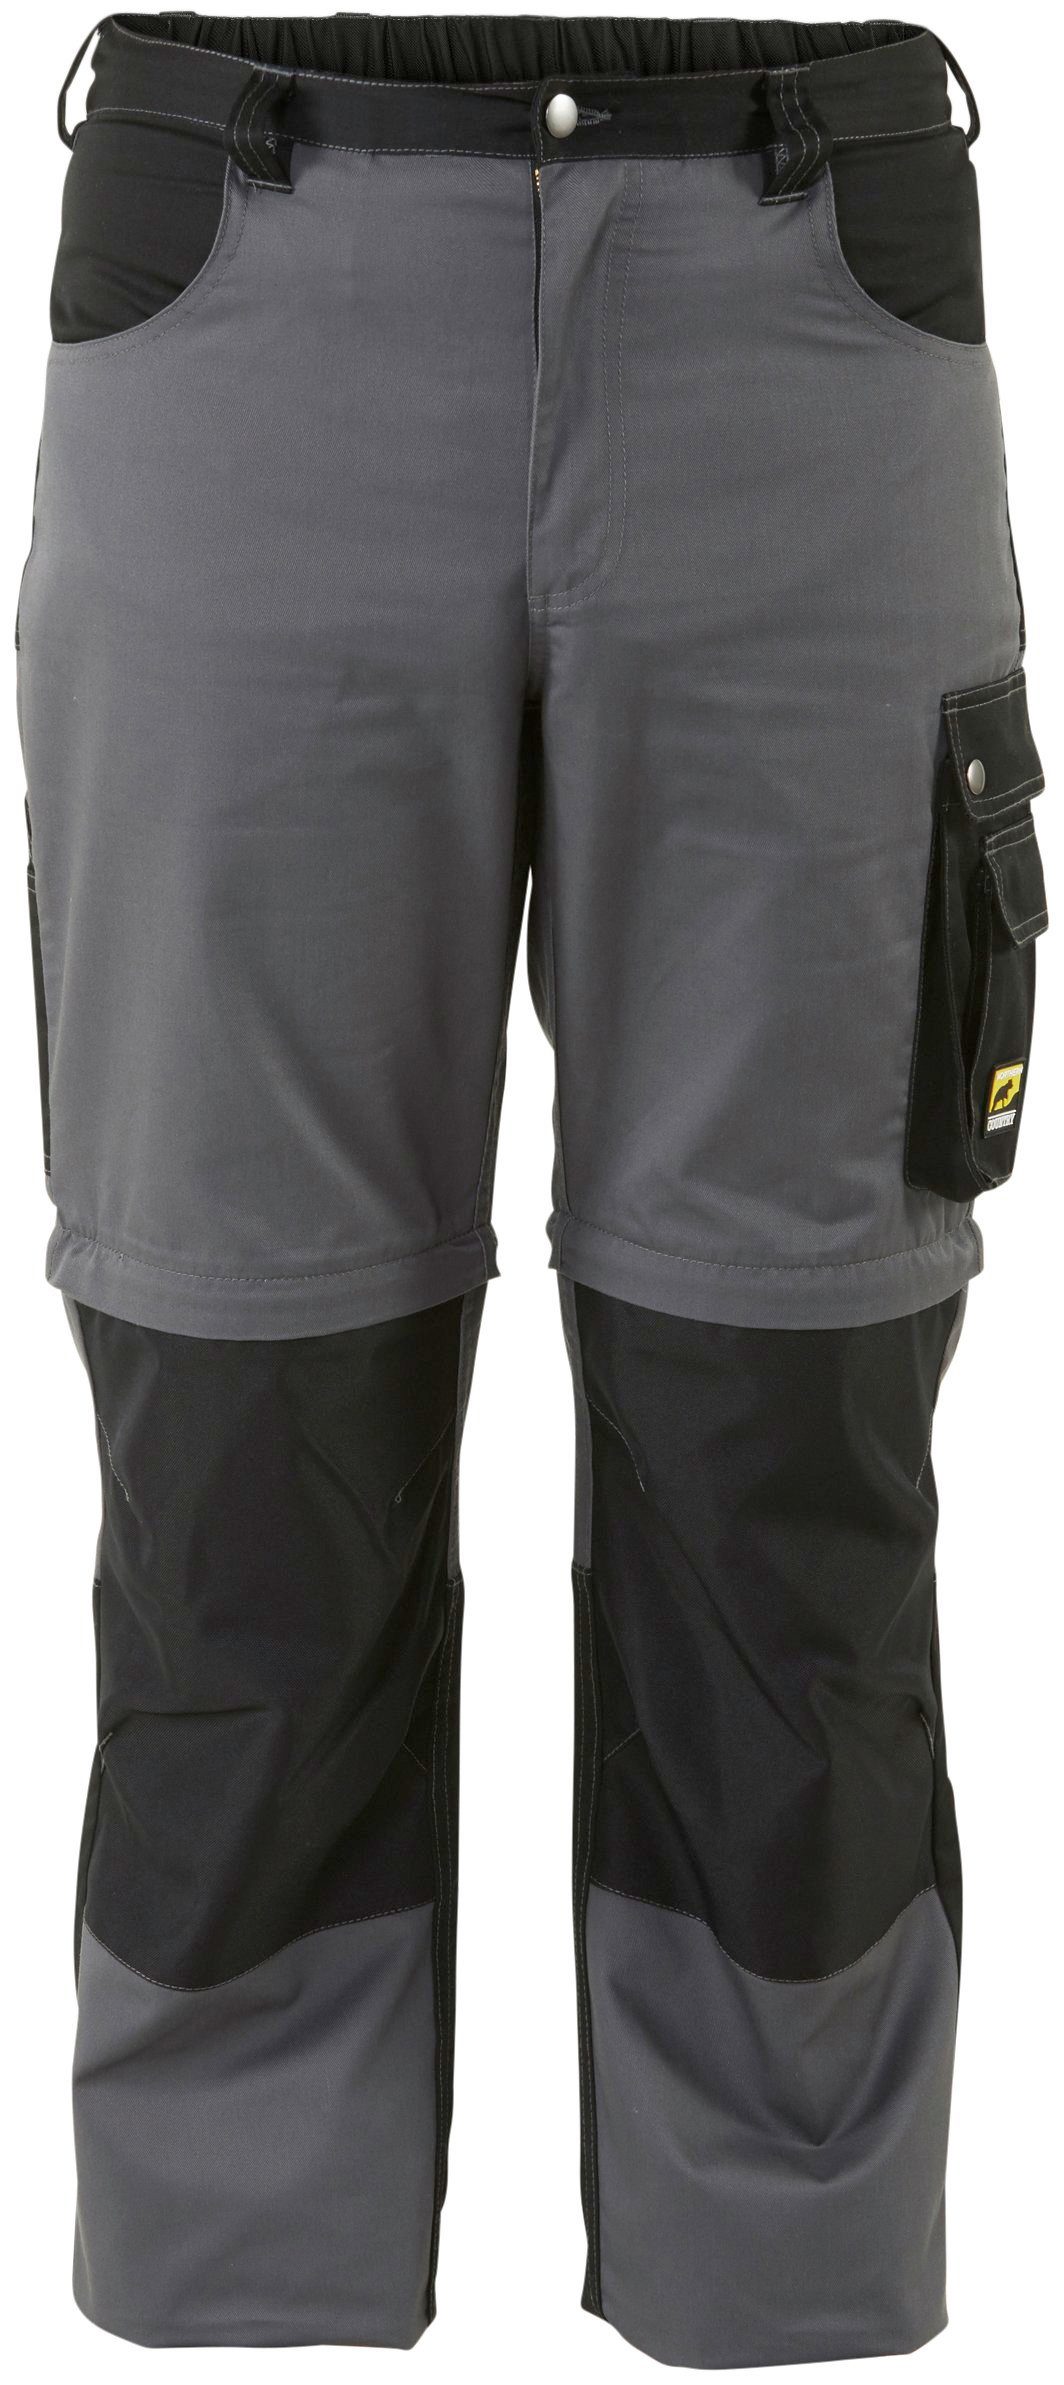 Funktion: Beinverlängerung Zipp-off (verstärkter einem Taschen) 8 mit möglich, in Shorts Northern und Worker Country Kniebereich, Arbeitshose lange Arbeitshose